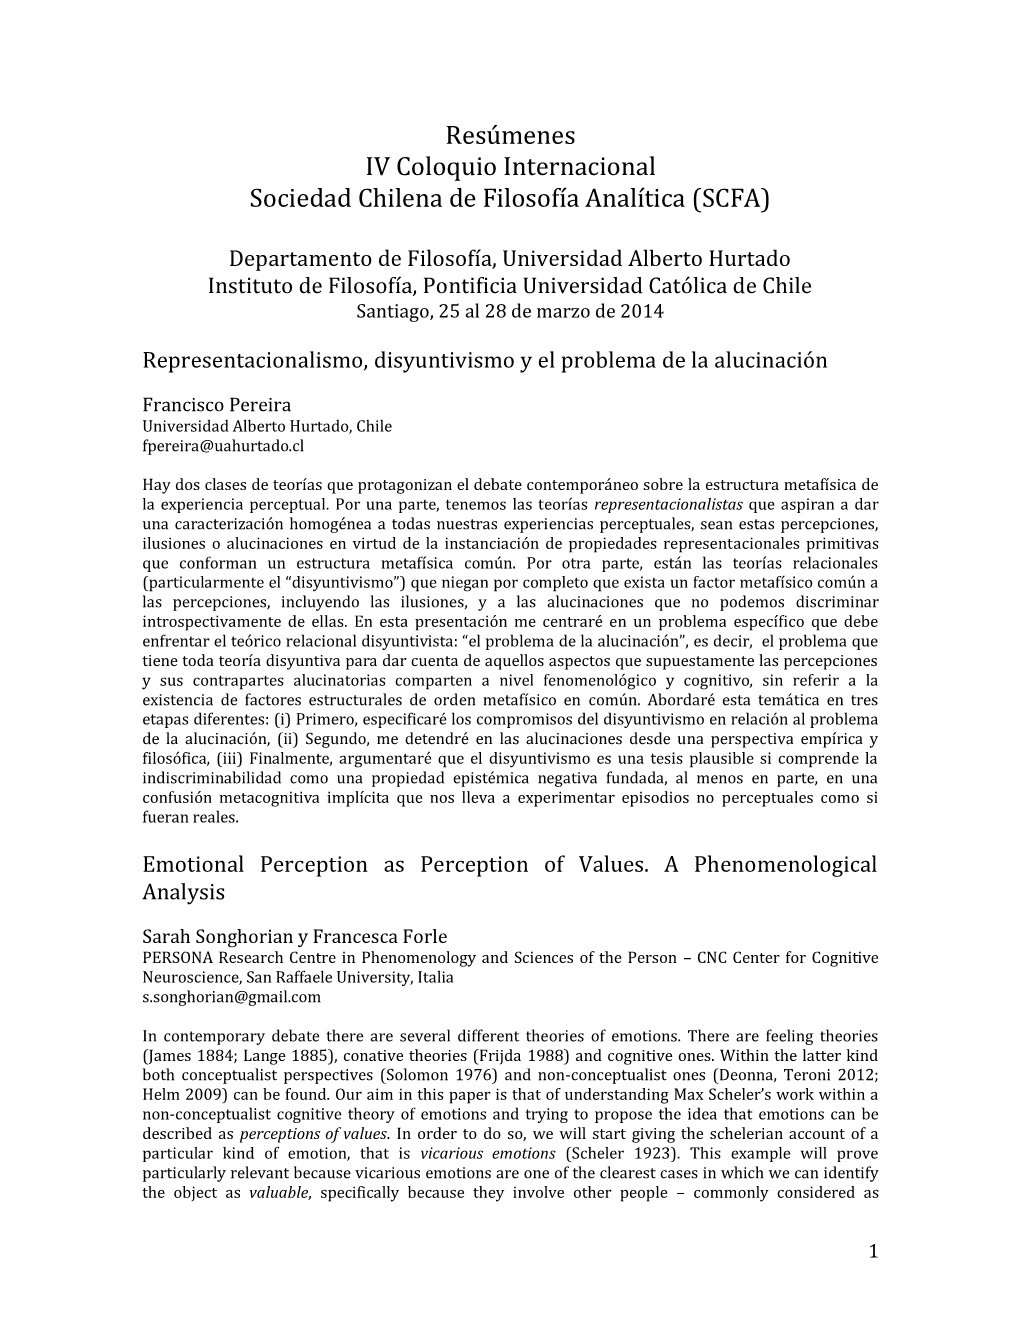 Resúmenes IV Coloquio Internacional Sociedad Chilena De Filosofía Analítica (SCFA)